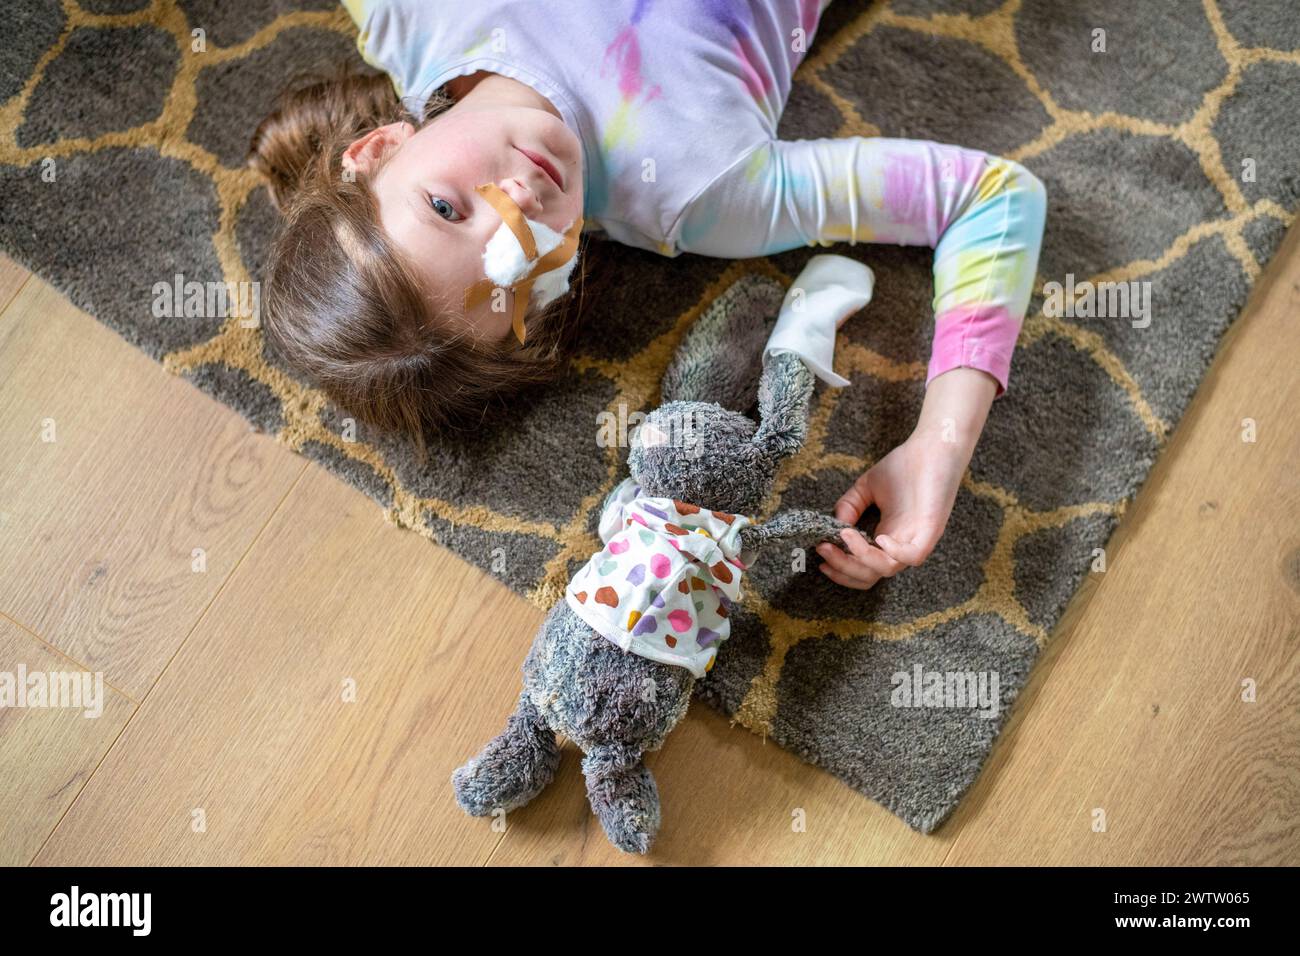 Ein junges Mädchen liegt auf dem Boden mit ihrem angefüllten Häschen, beide tragen Gesichtsmasken. Stockfoto